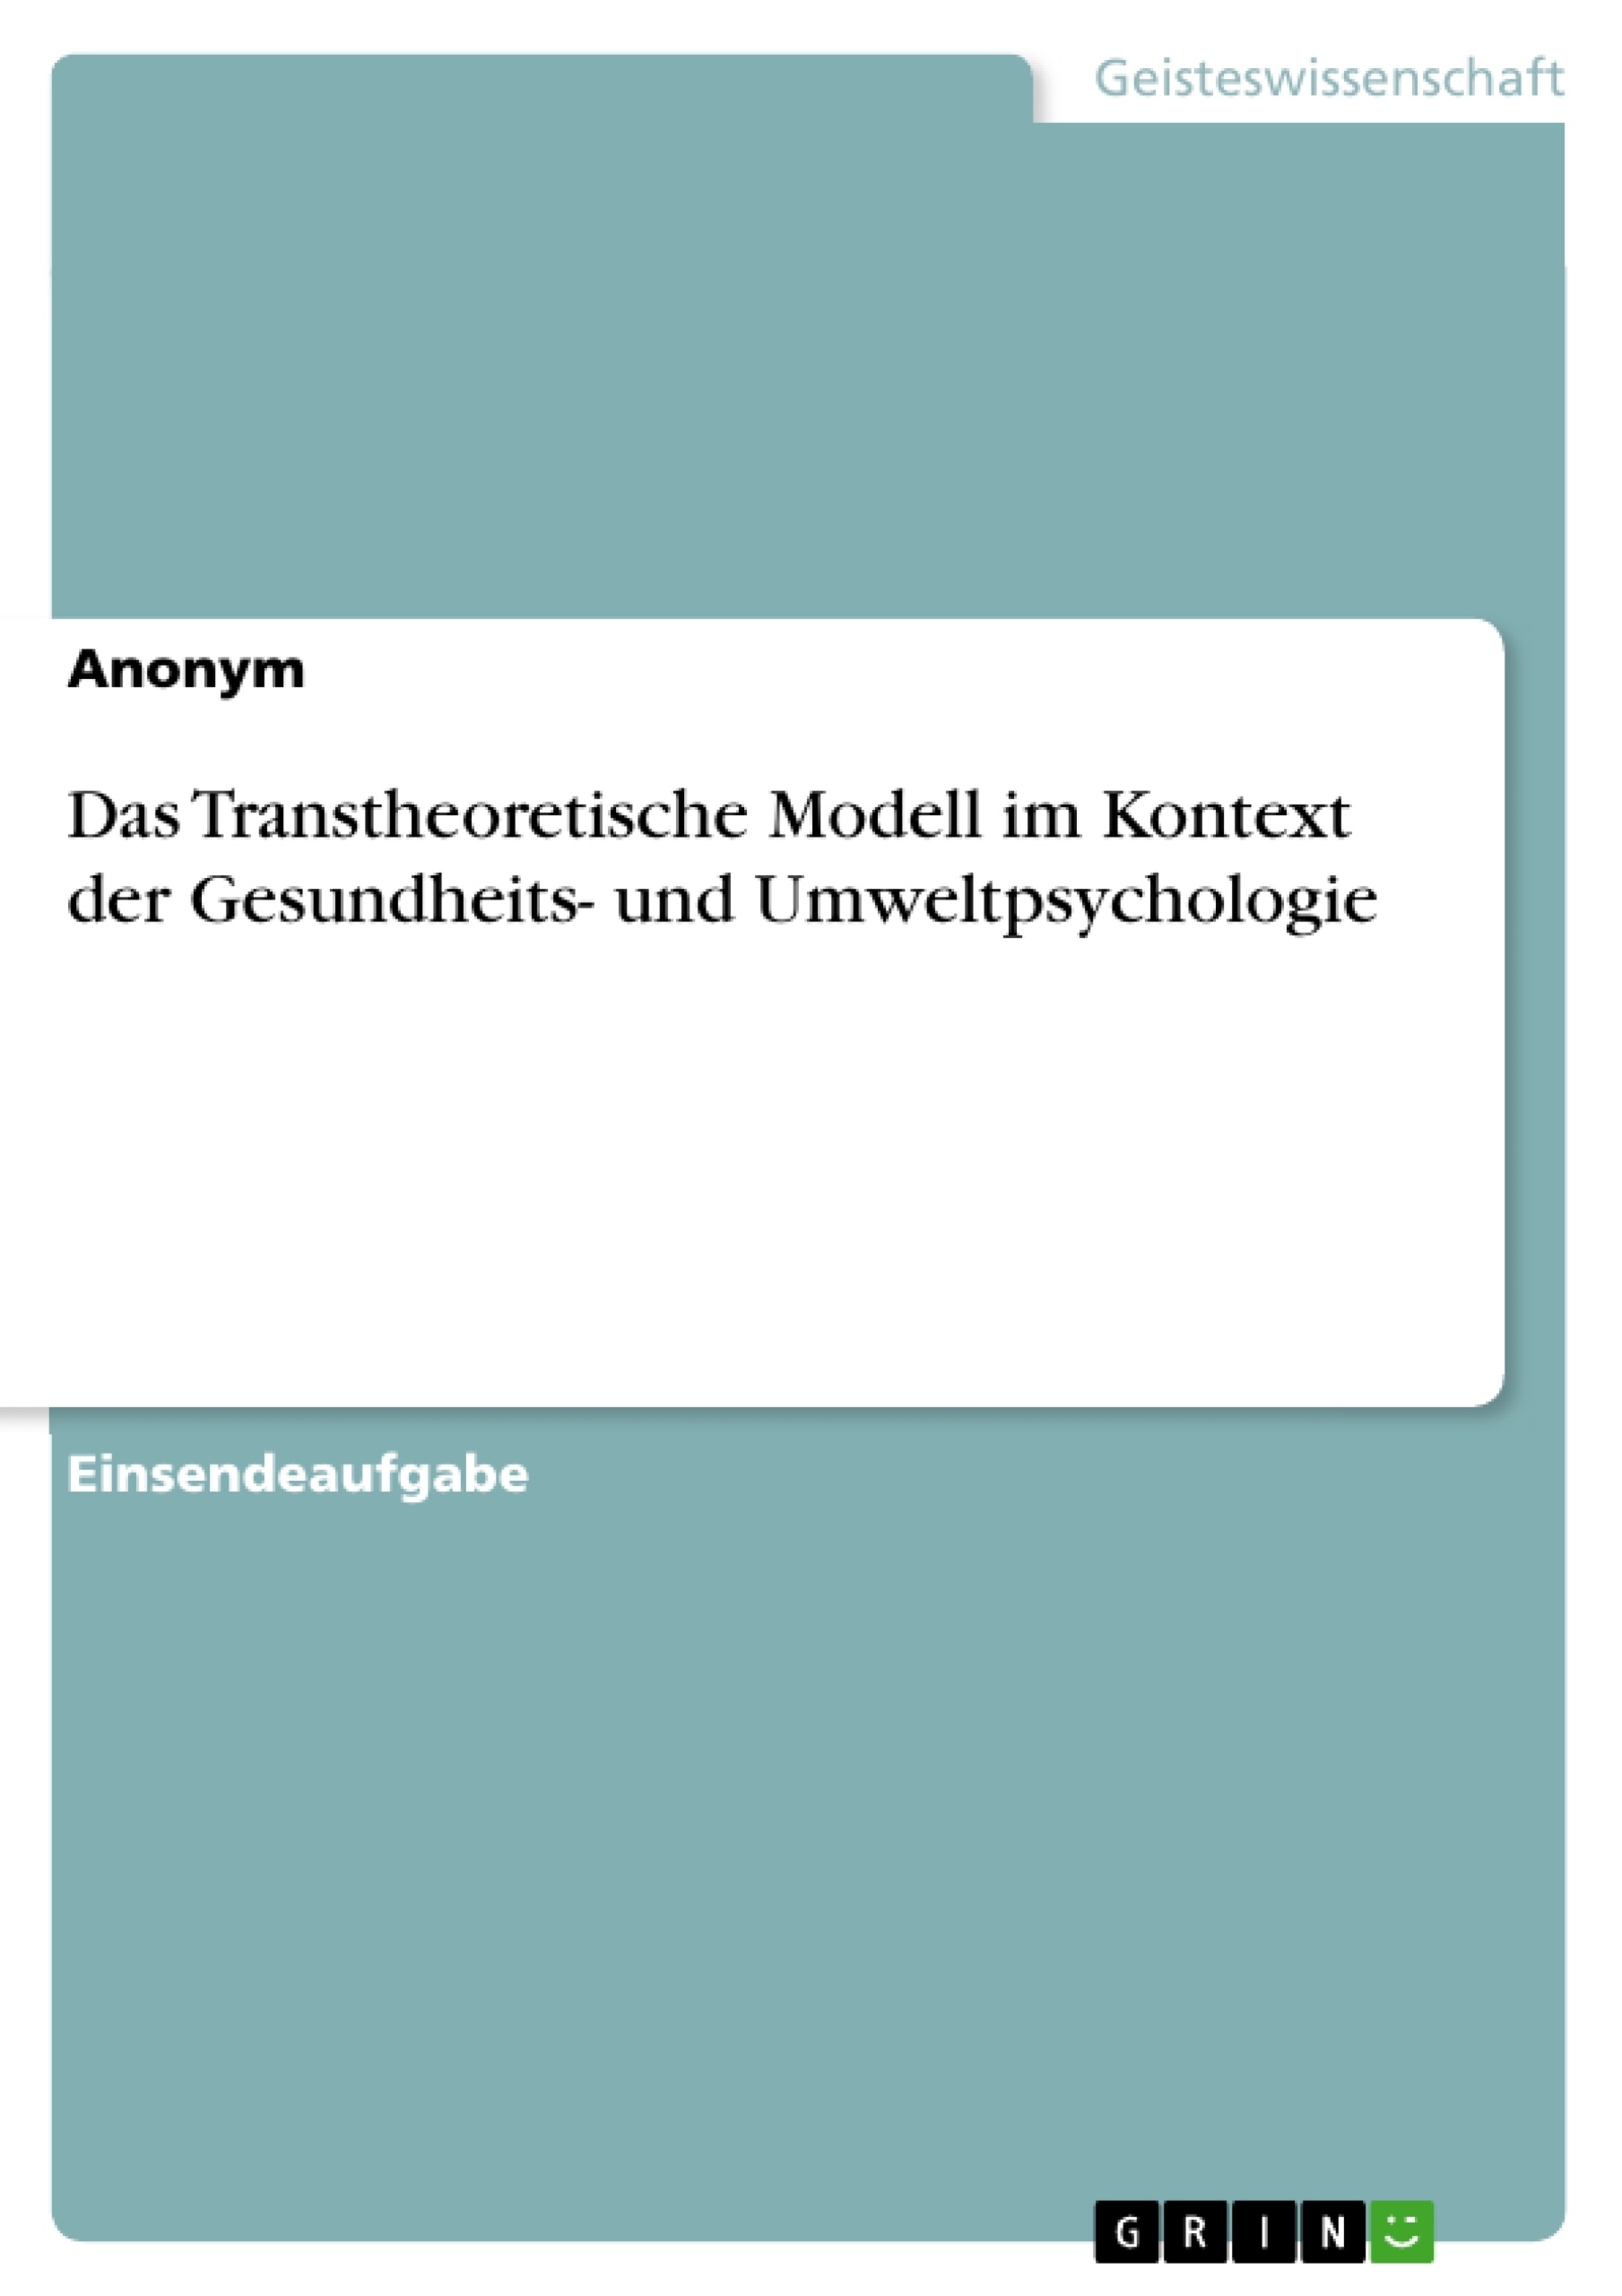 Título: Das Transtheoretische Modell im Kontext der Gesundheits- und Umweltpsychologie